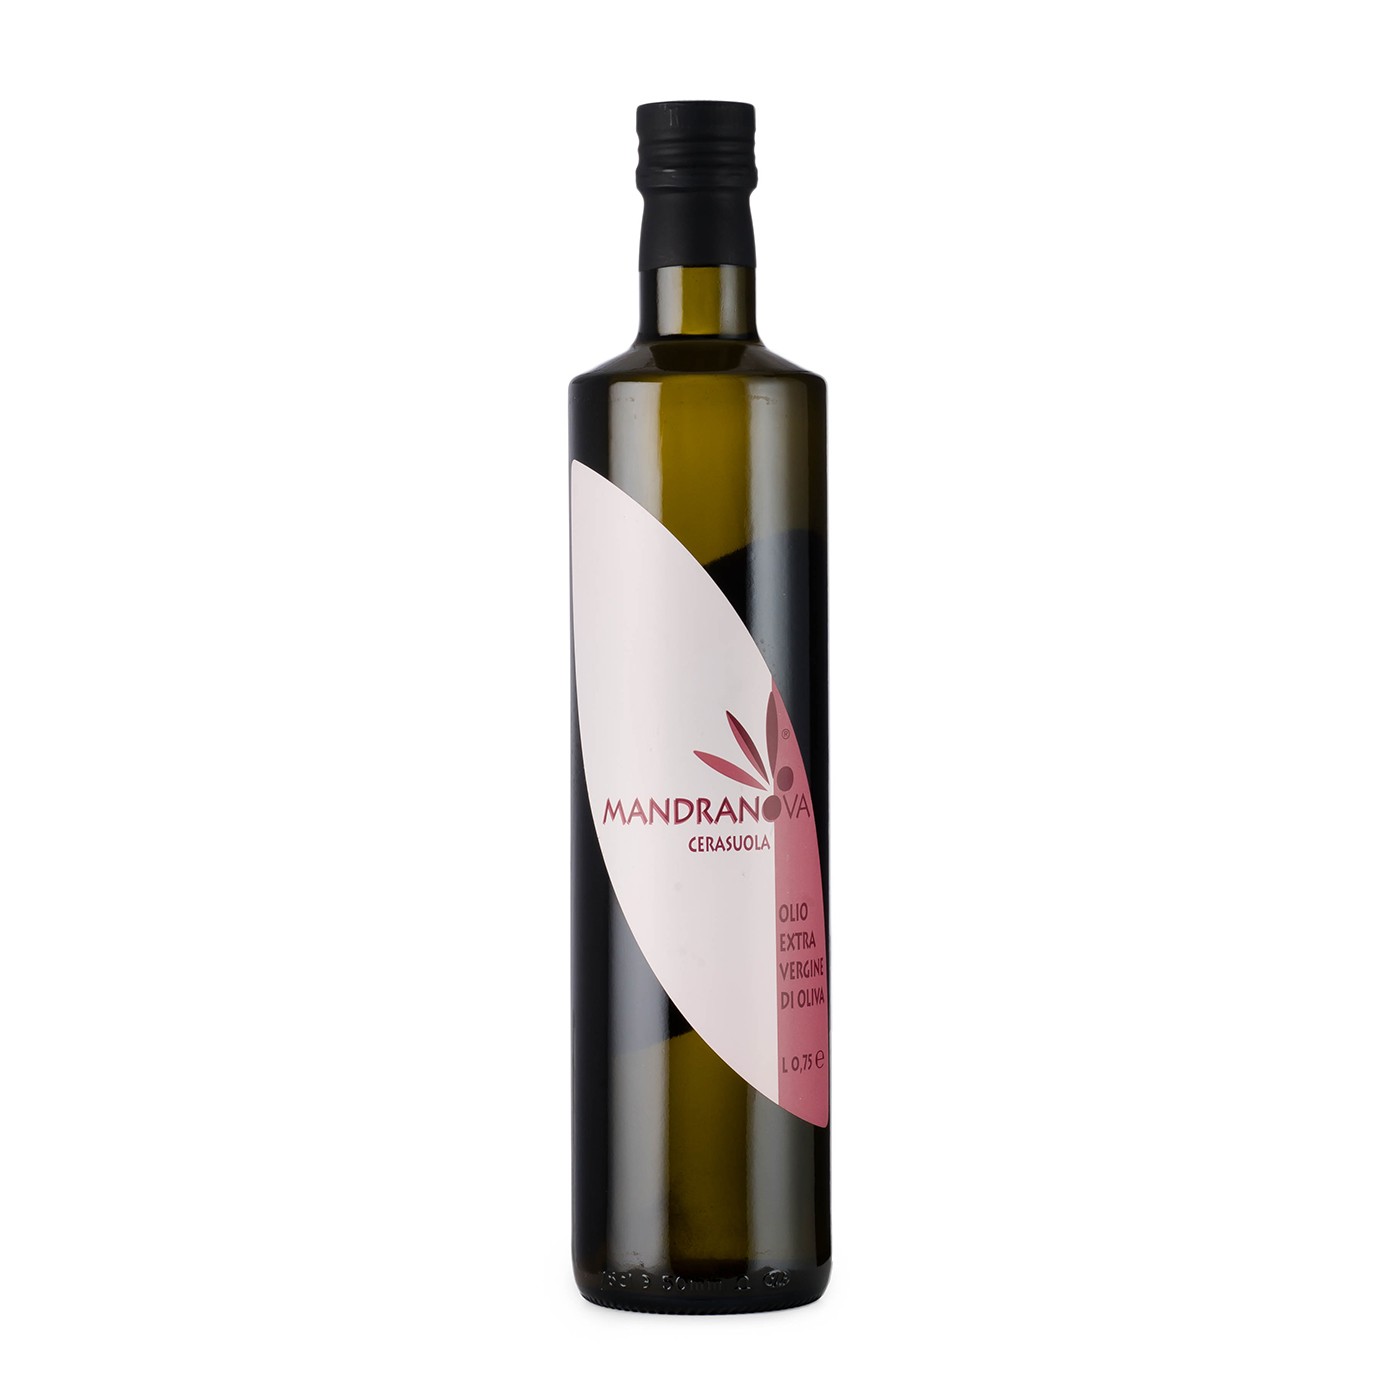 Cerasuola Extra Virgin Olive Oil 25.4 oz